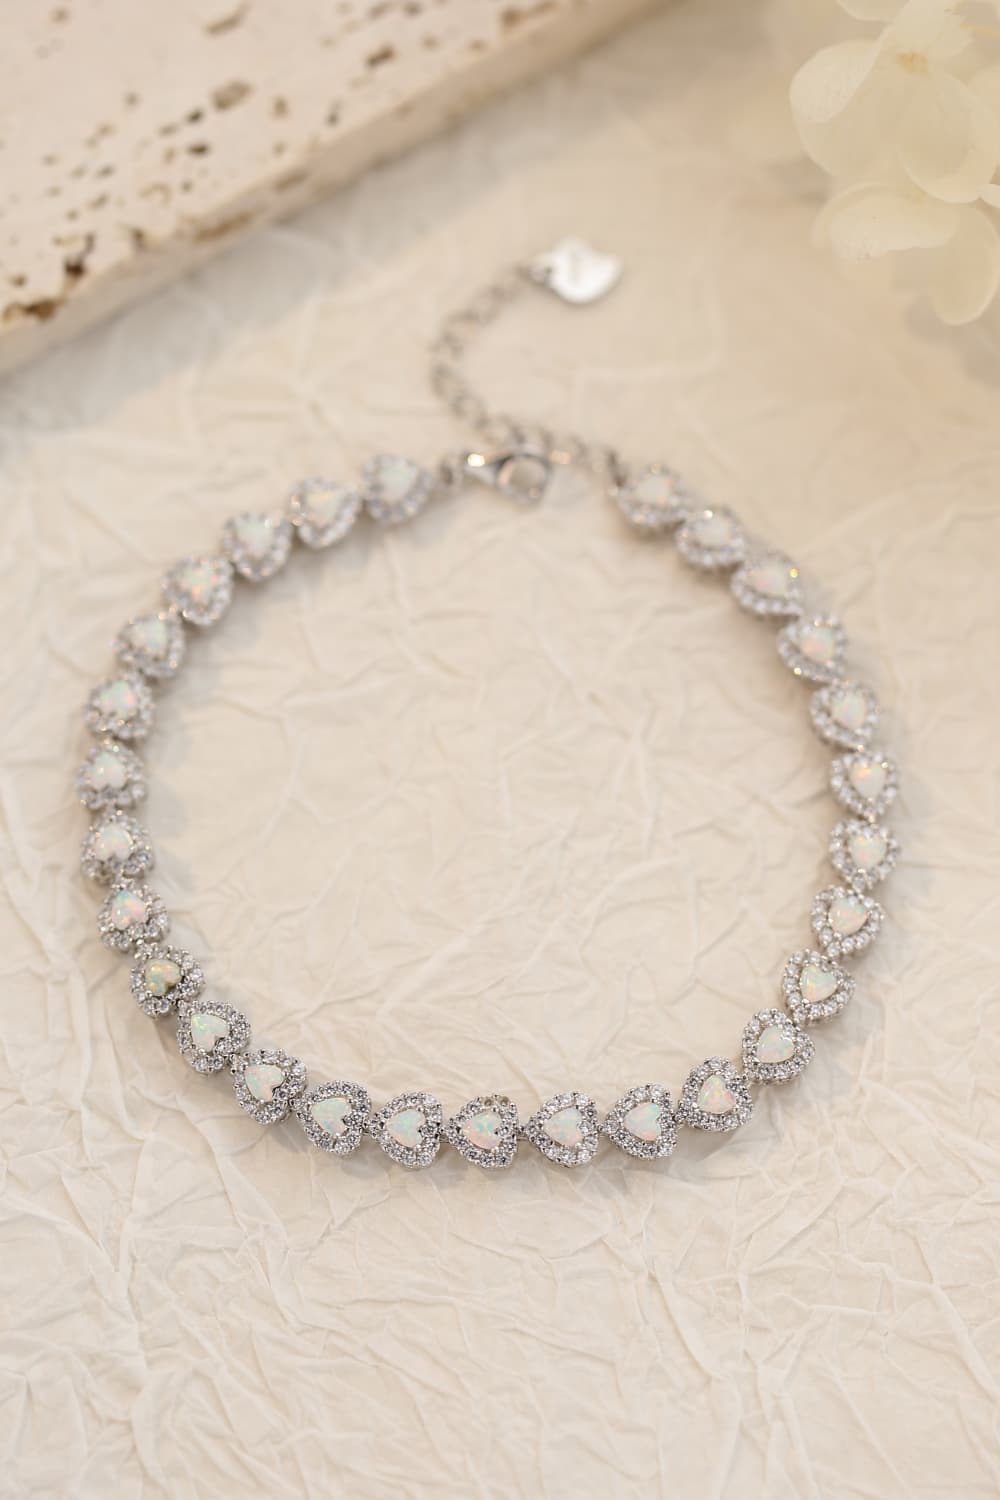 Opal Heart Bracelet by Metopia Designs